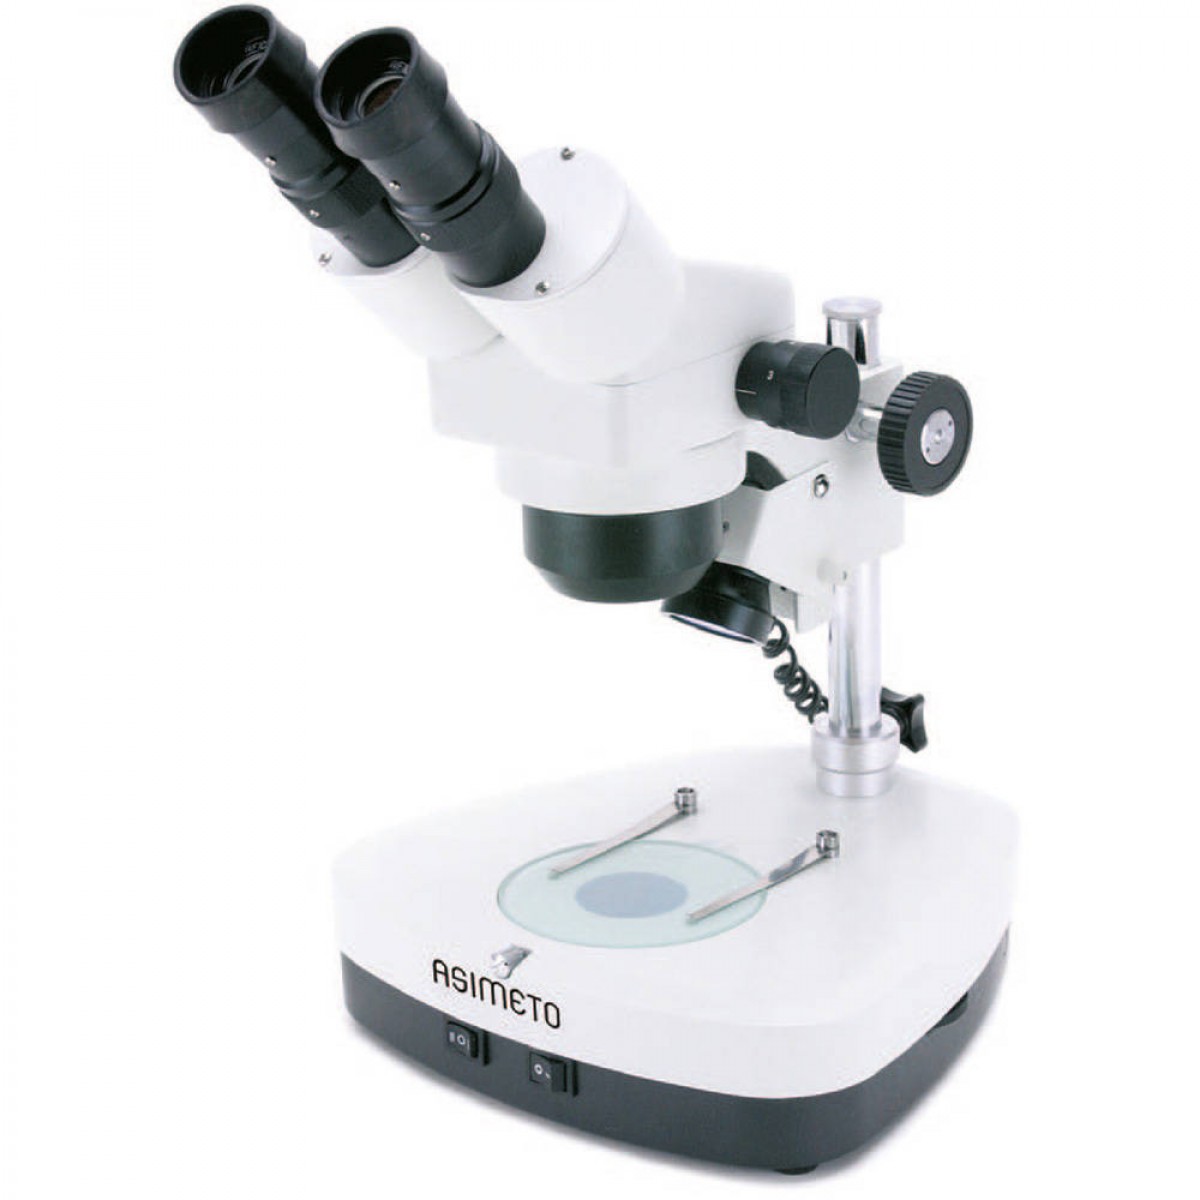 ASİMETO - Çift Okülerli Mikroskop Lab 2